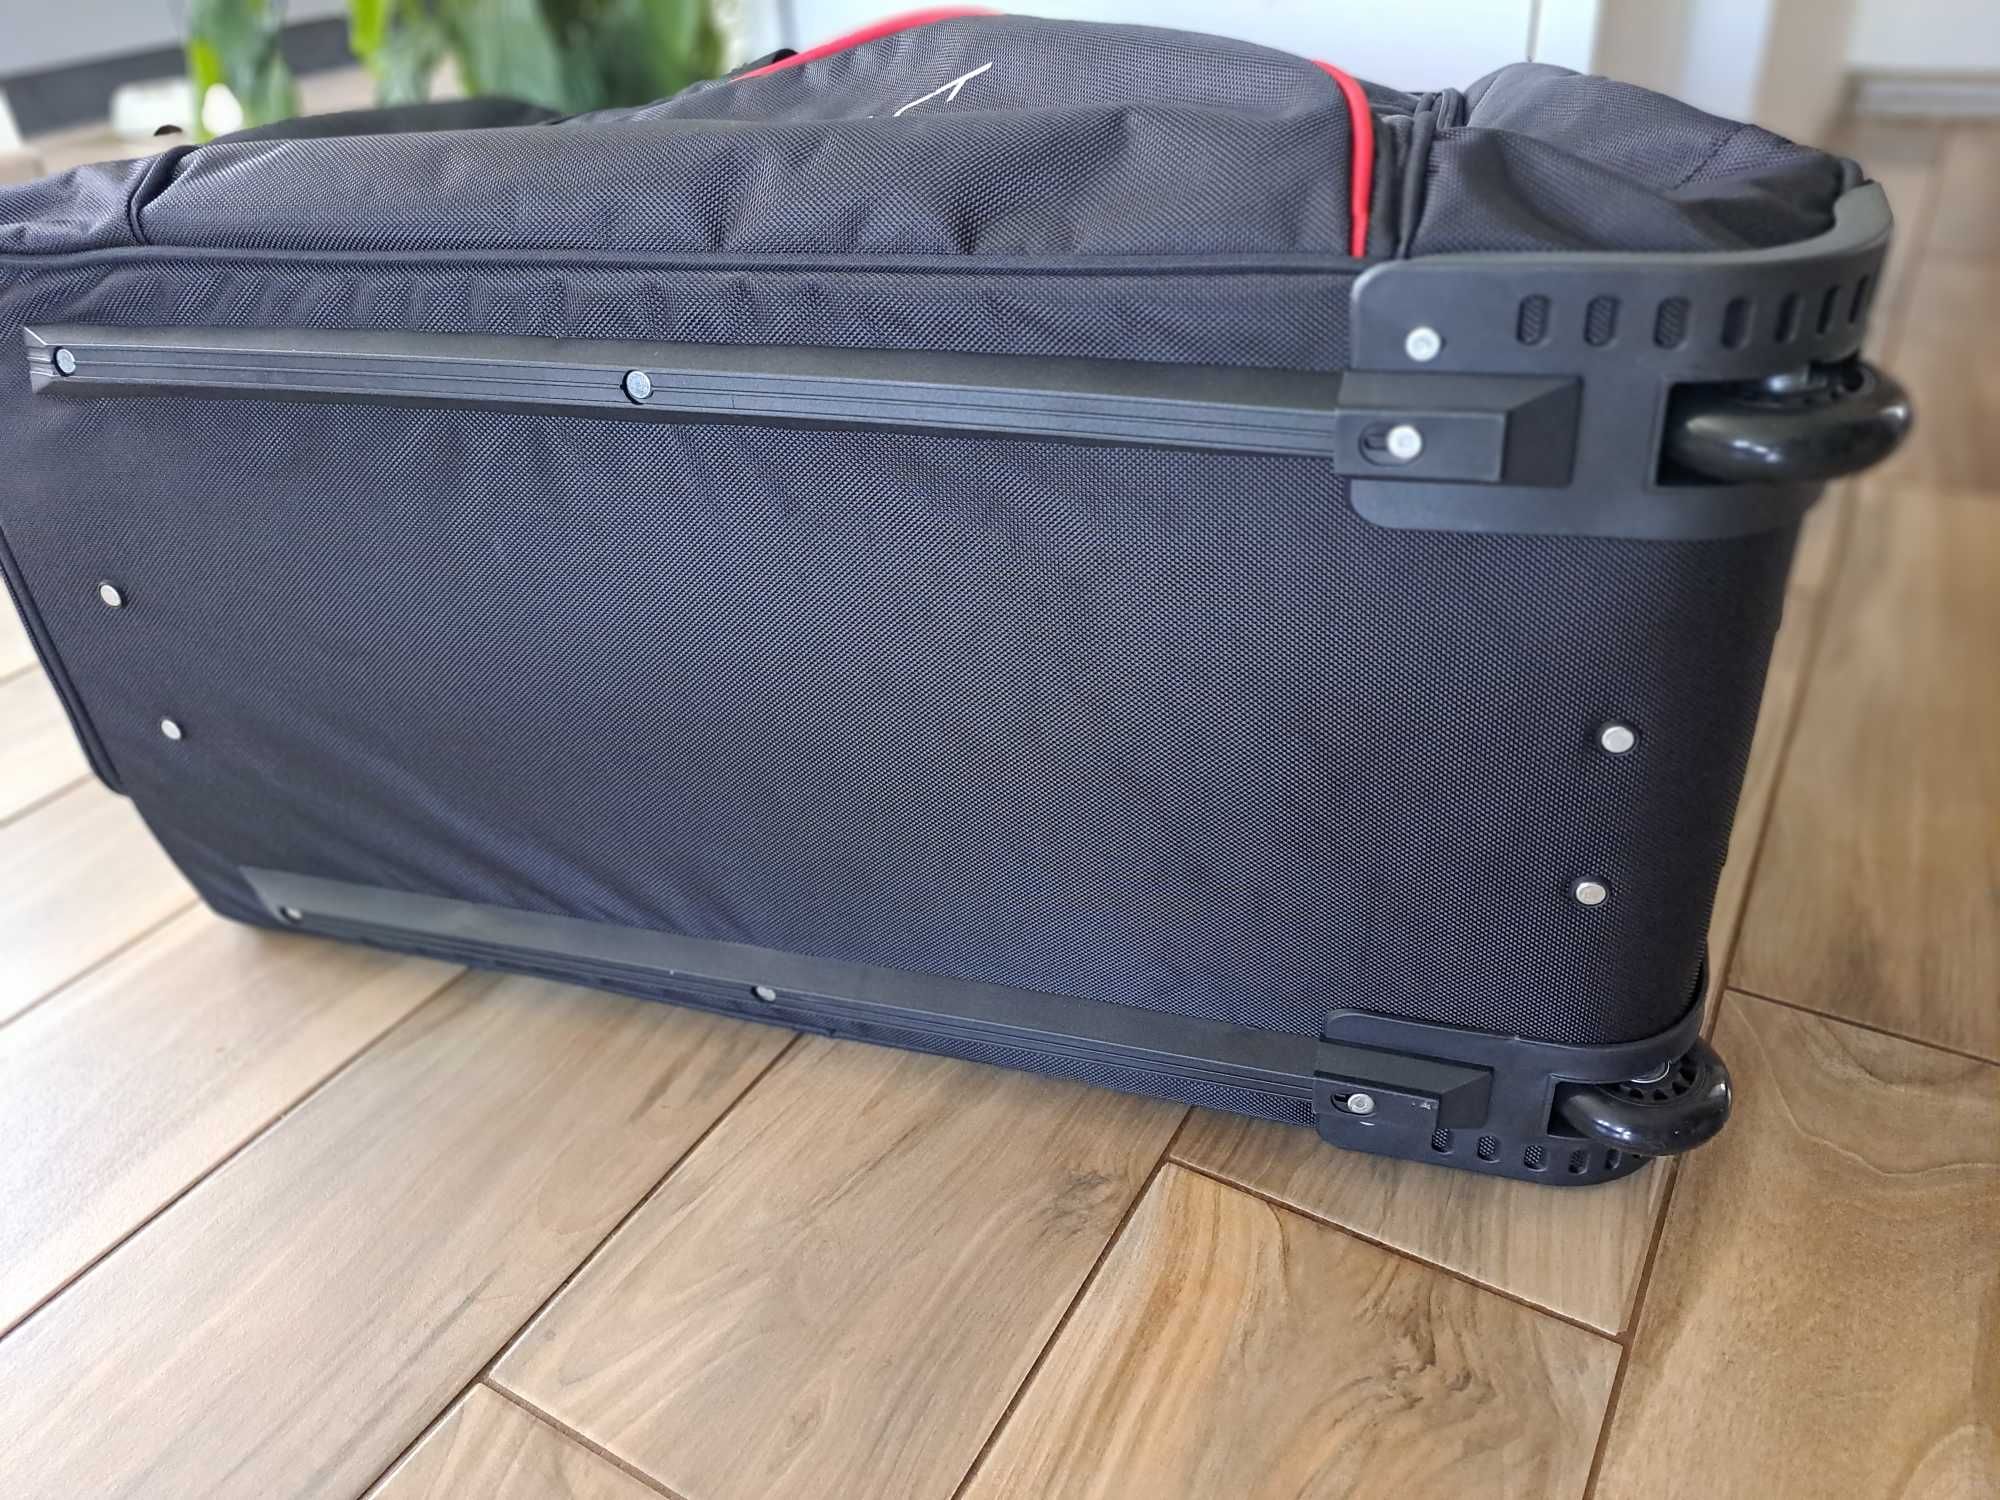 Duża torba podróżna na kółkach do samochodu/samolotu Kjust